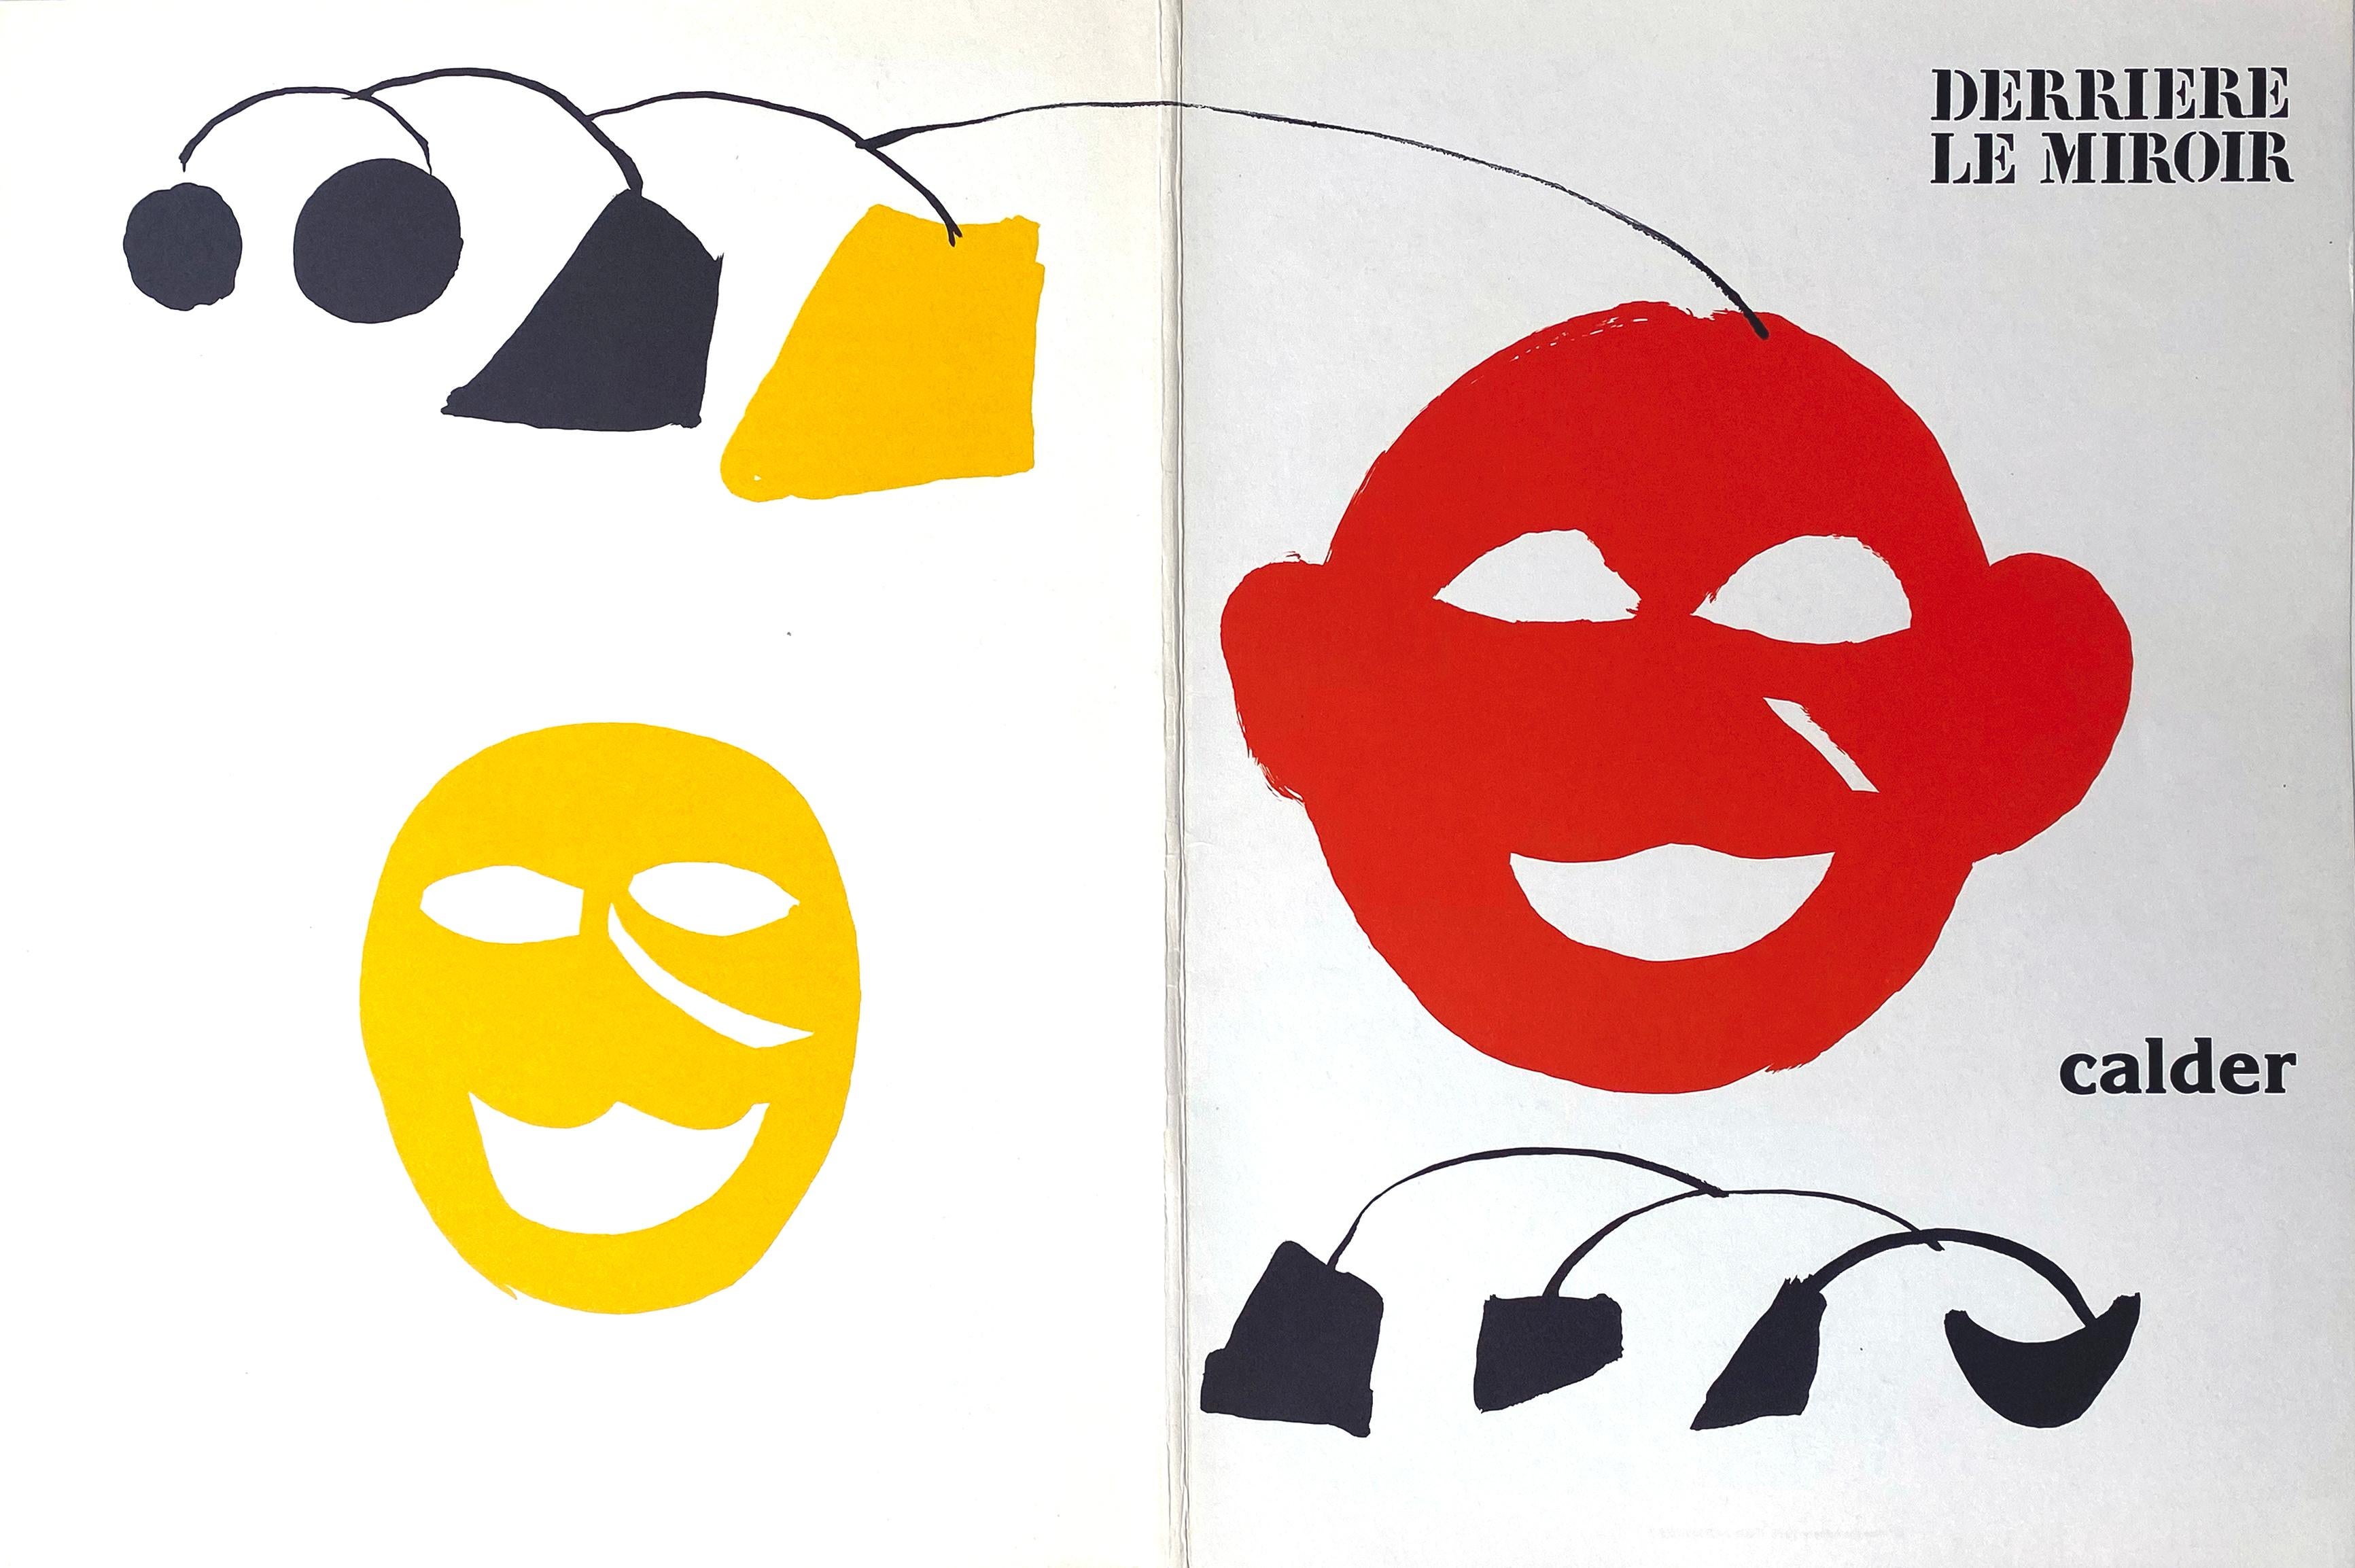 Derriere Le Miroir No. 221 Cover - Print by Alexander Calder